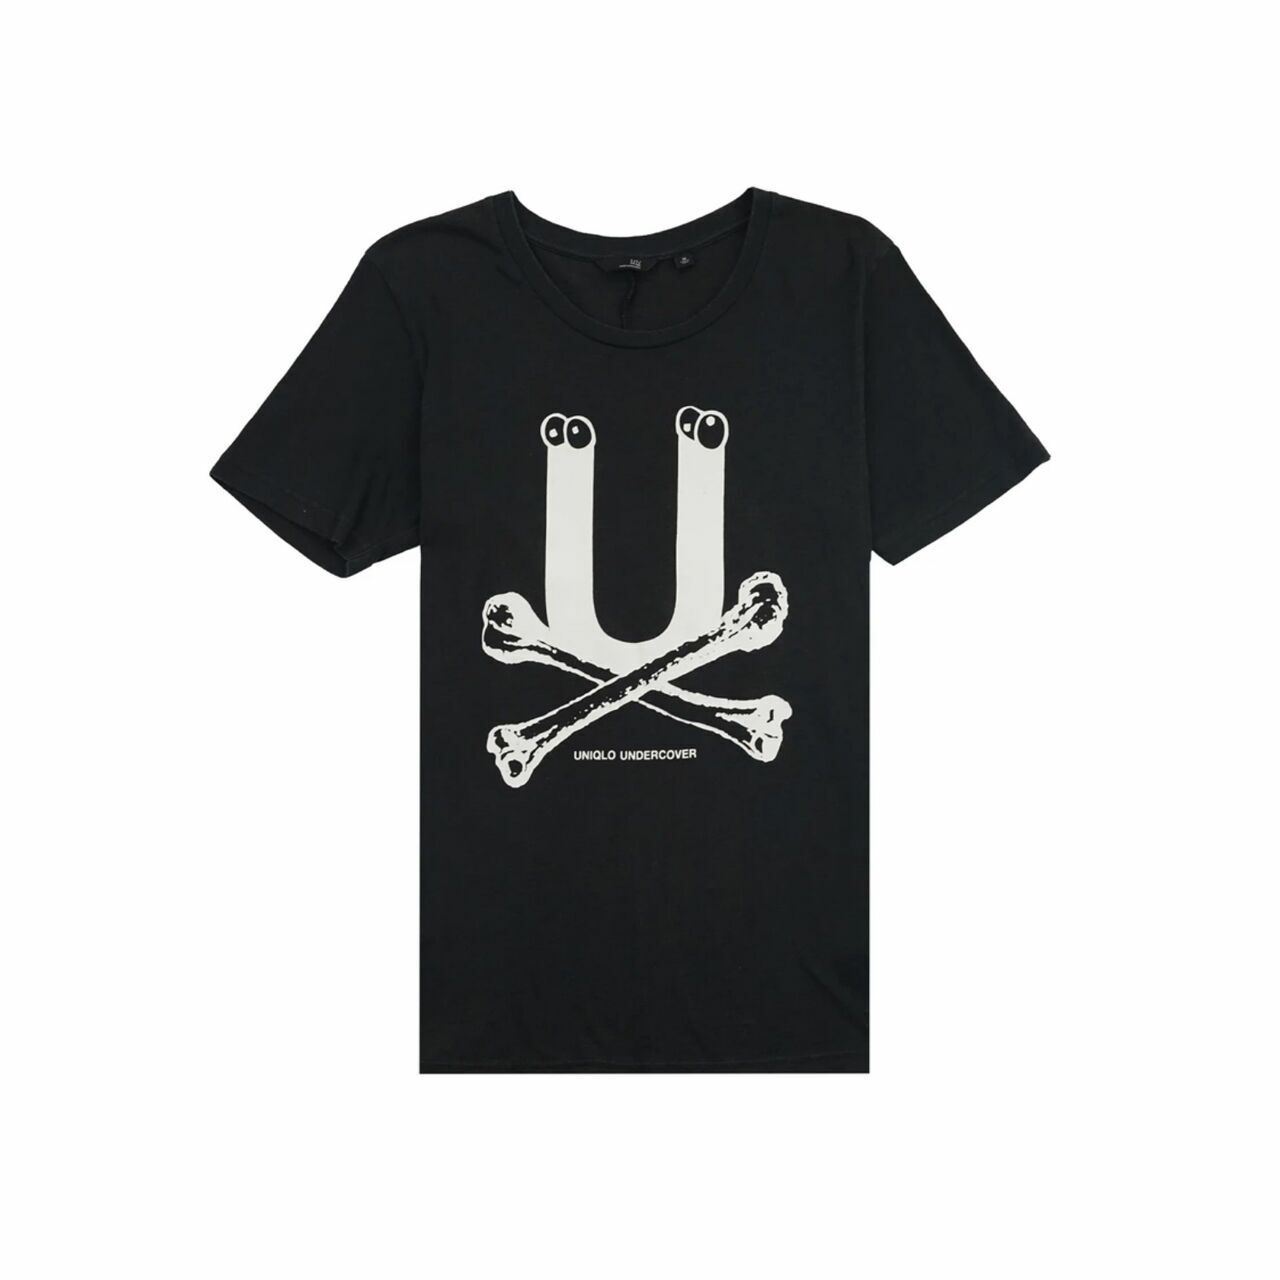 Uniqlo x Undercover Black Bone T-Shirt